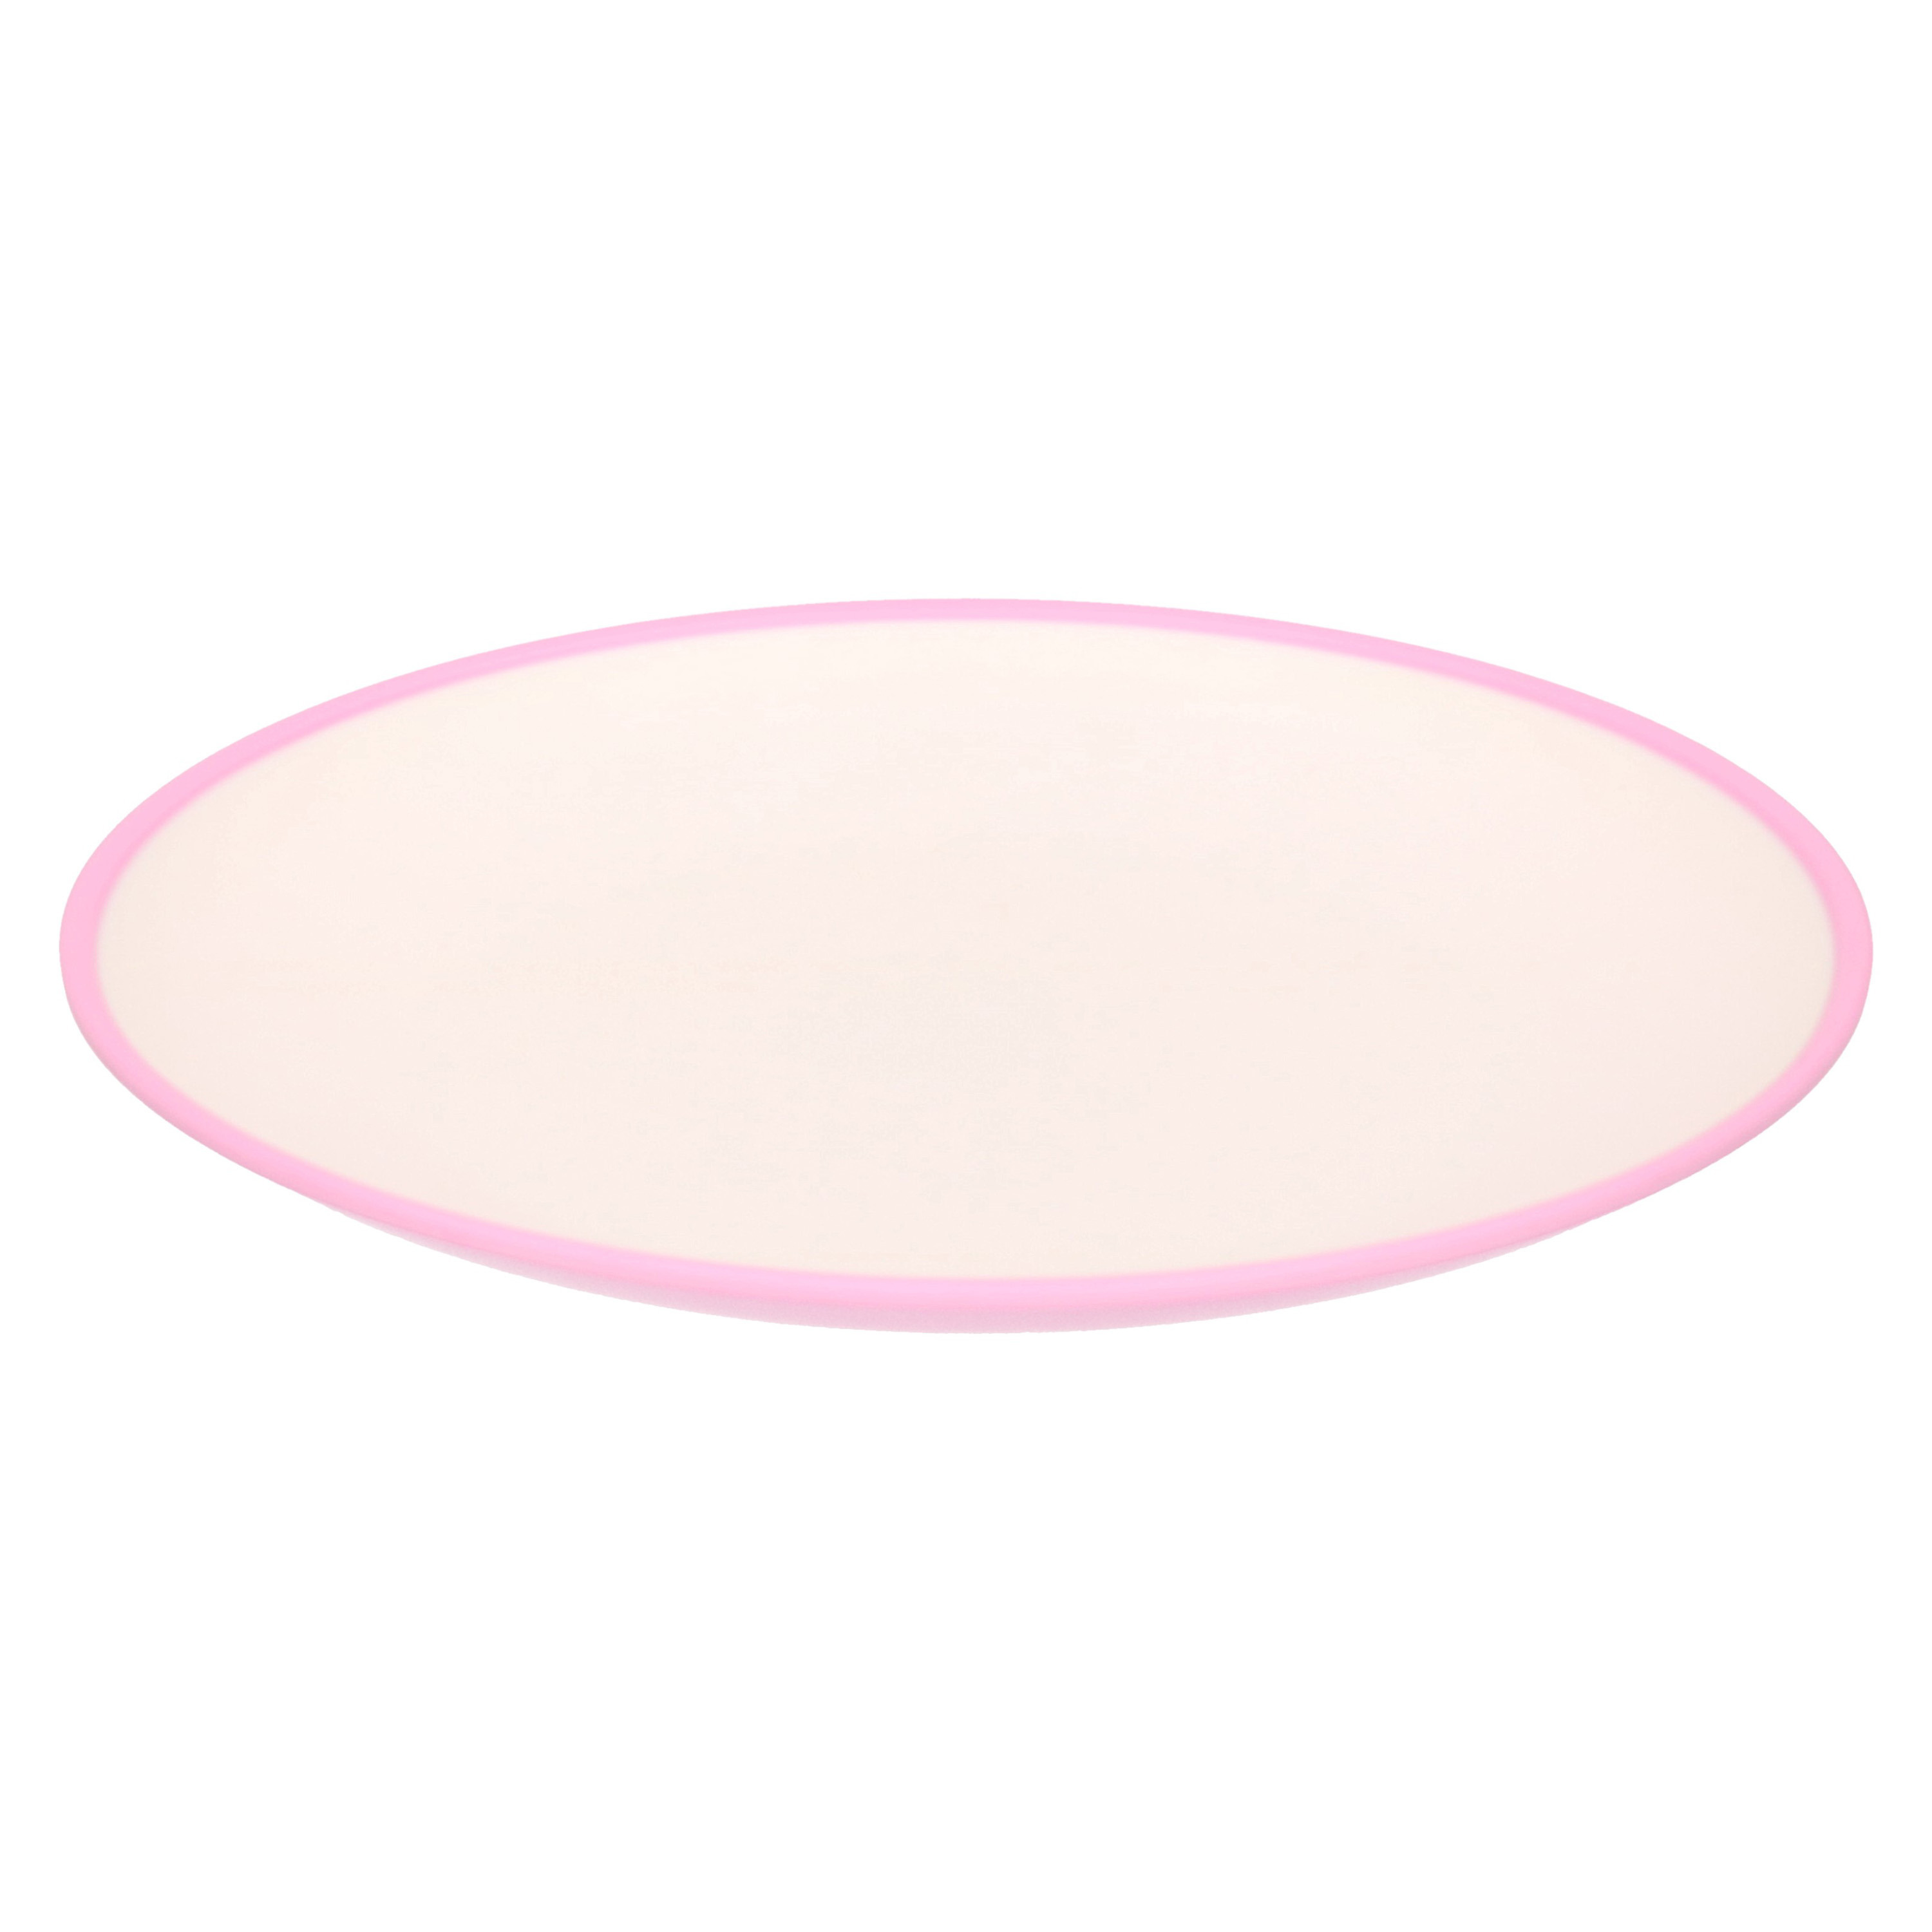 Onbreekbare kunststof-melamine roze ontbijt bordjes 23 cm voor outdoor-camping